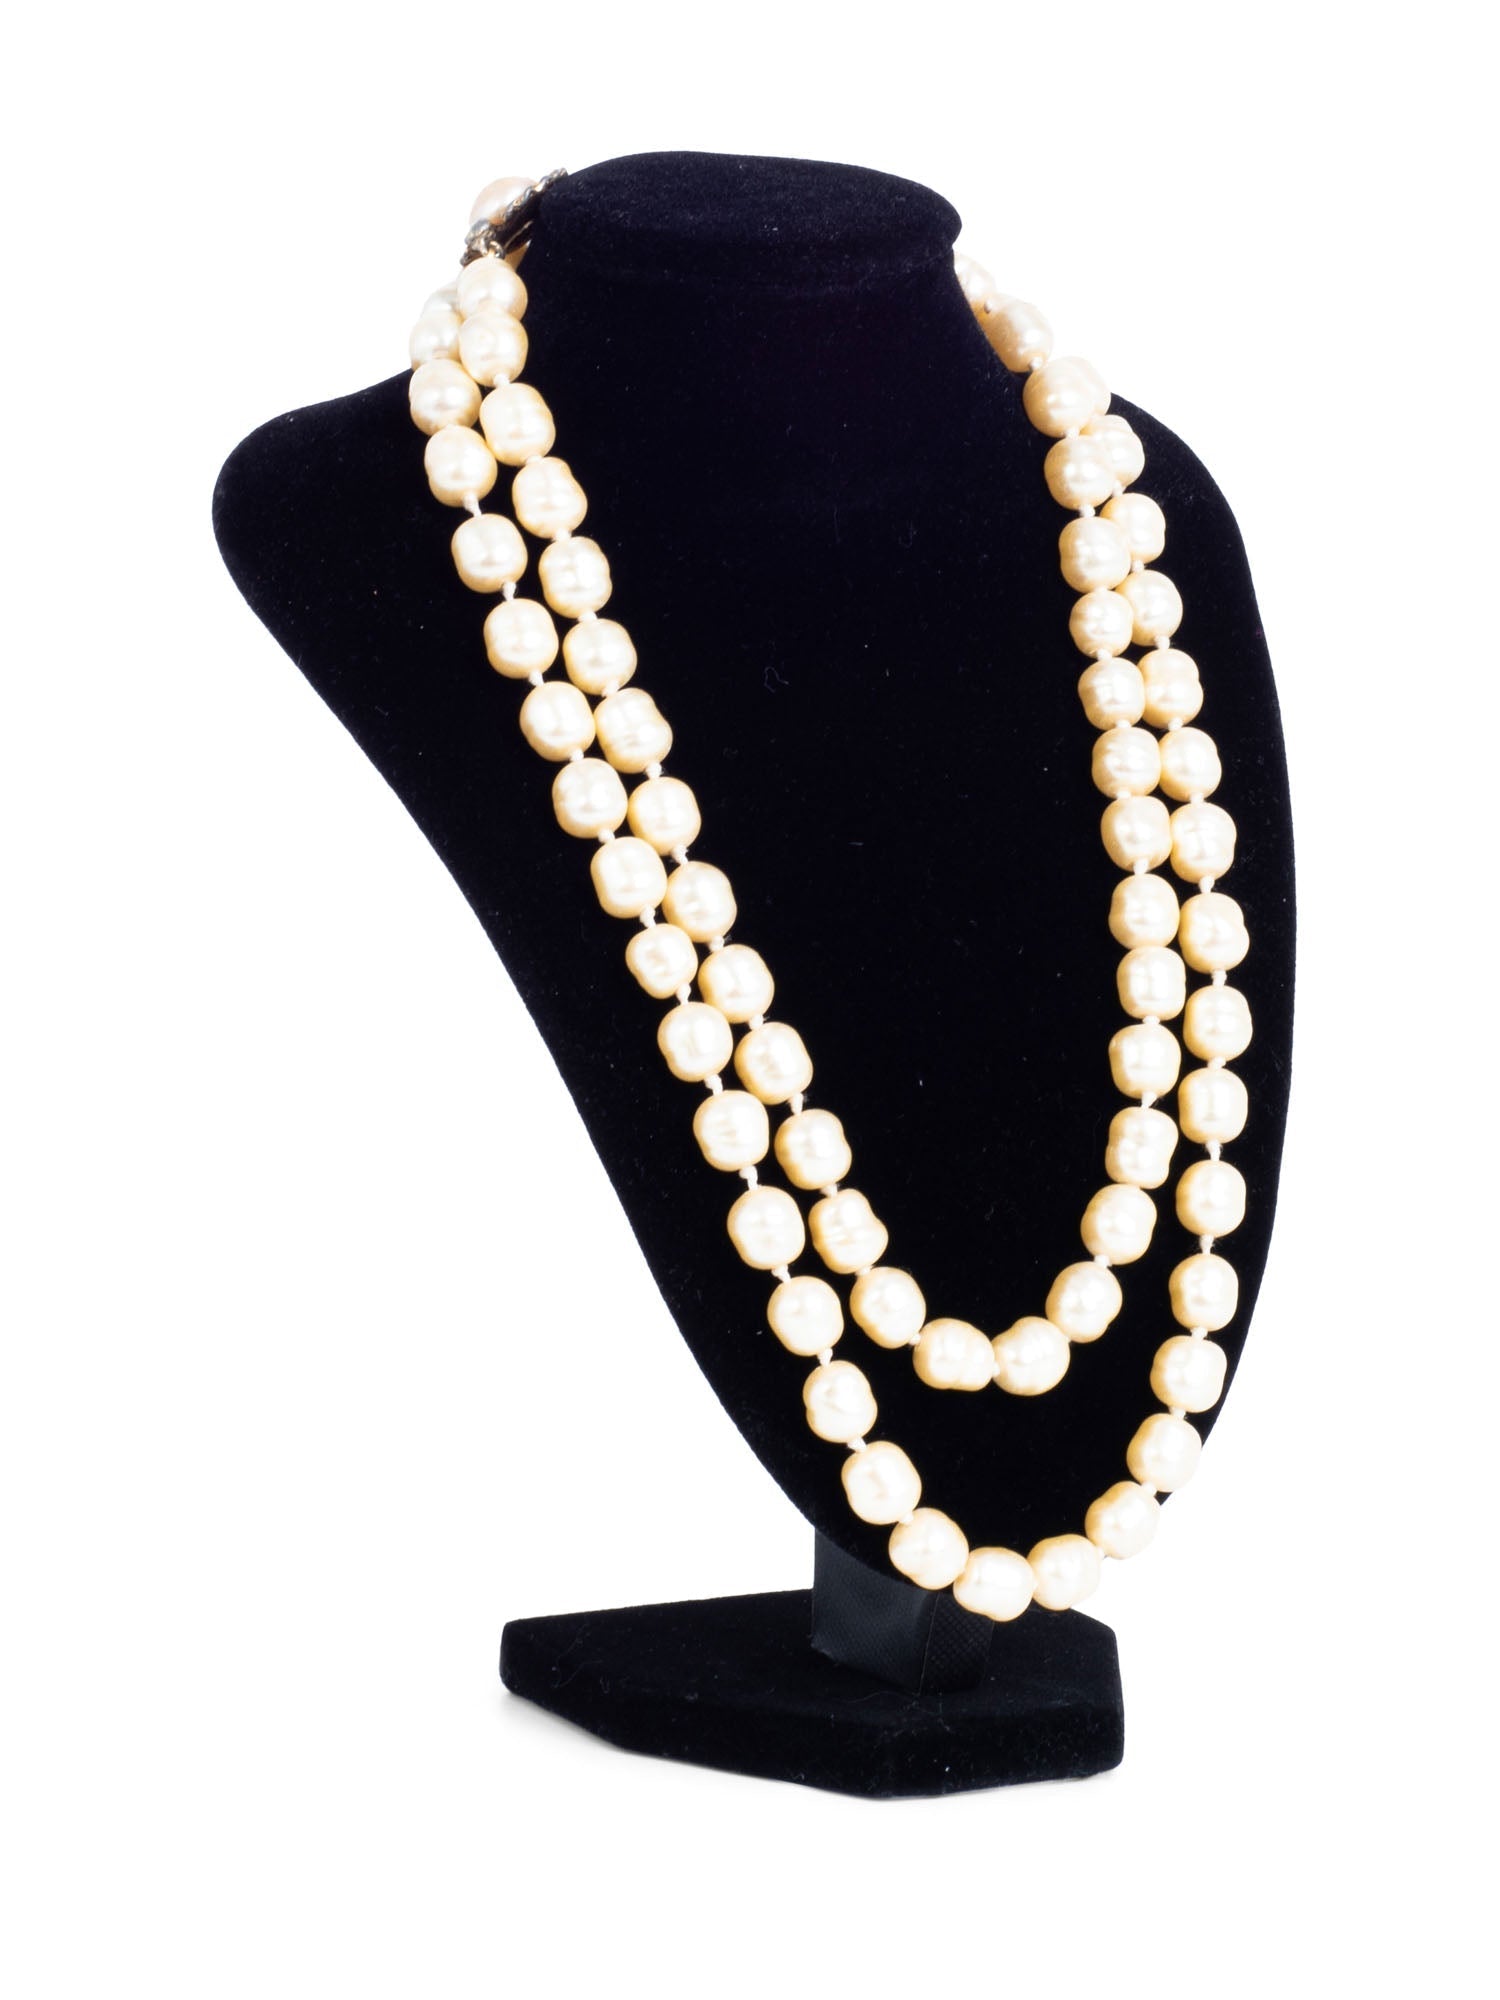 CHANEL Vintage Long Pearl Necklace Ivory Gold-designer resale